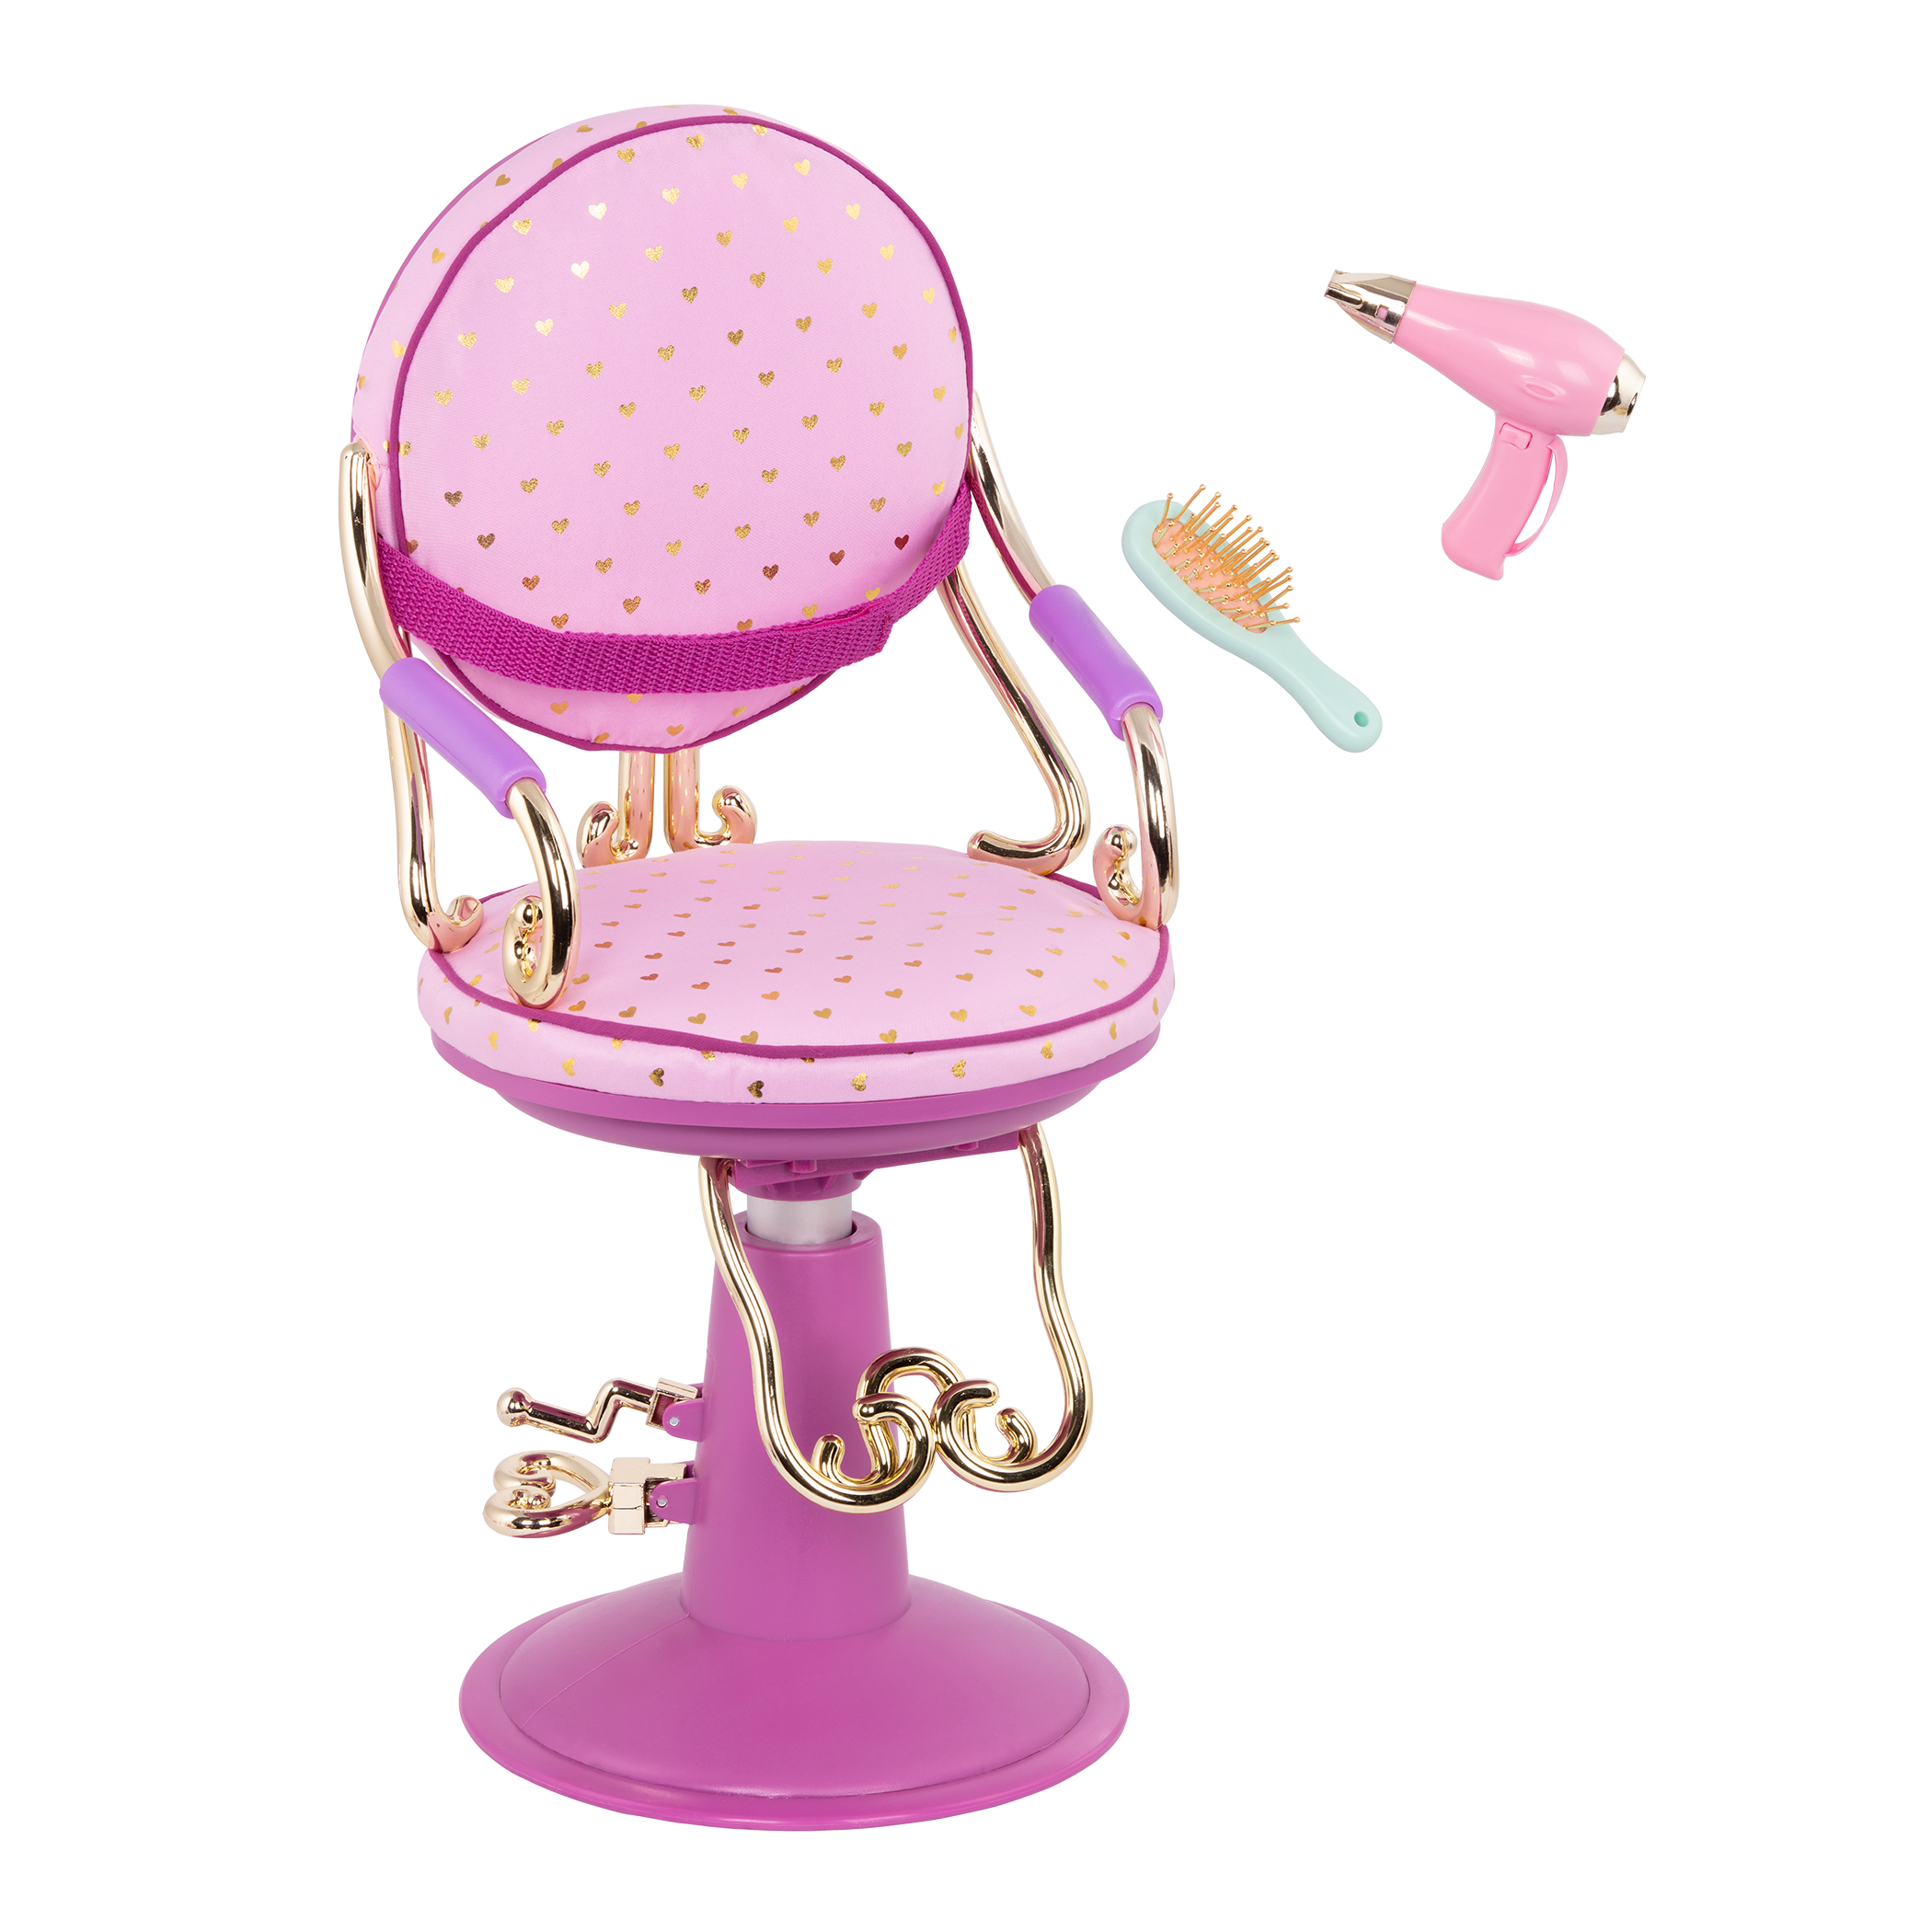 Sitting Pretty Salon Chair for 18-inch Dolls 